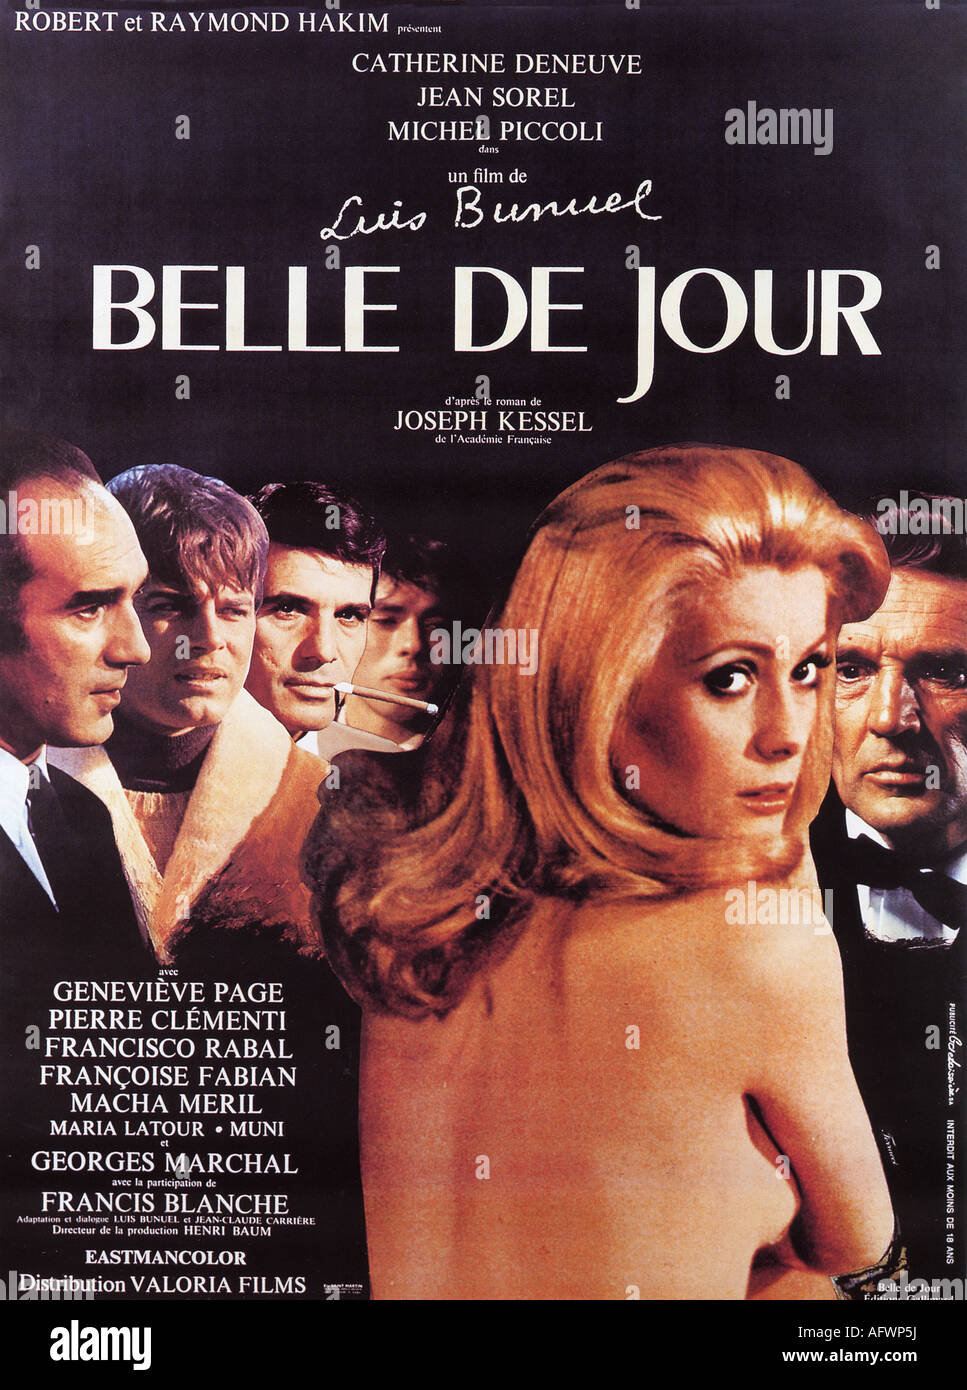 BELLE DE JOUR poster for 1967 Paris Film production Stock Photo